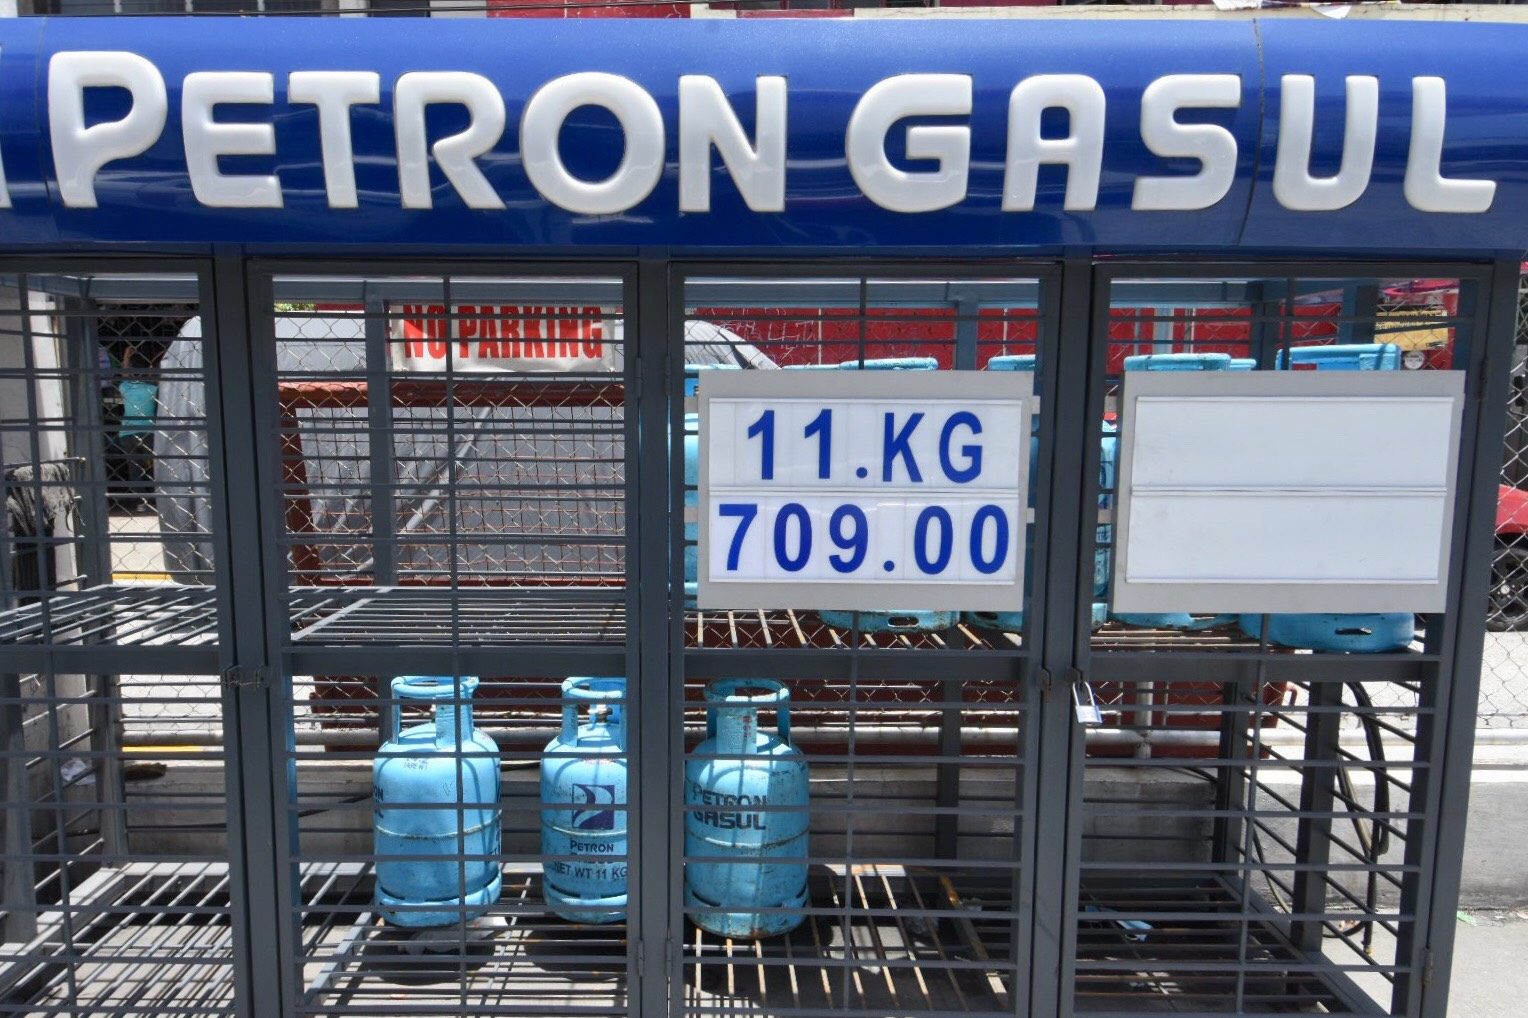 Gov’t sets price freeze for kerosene, LPG until March 24